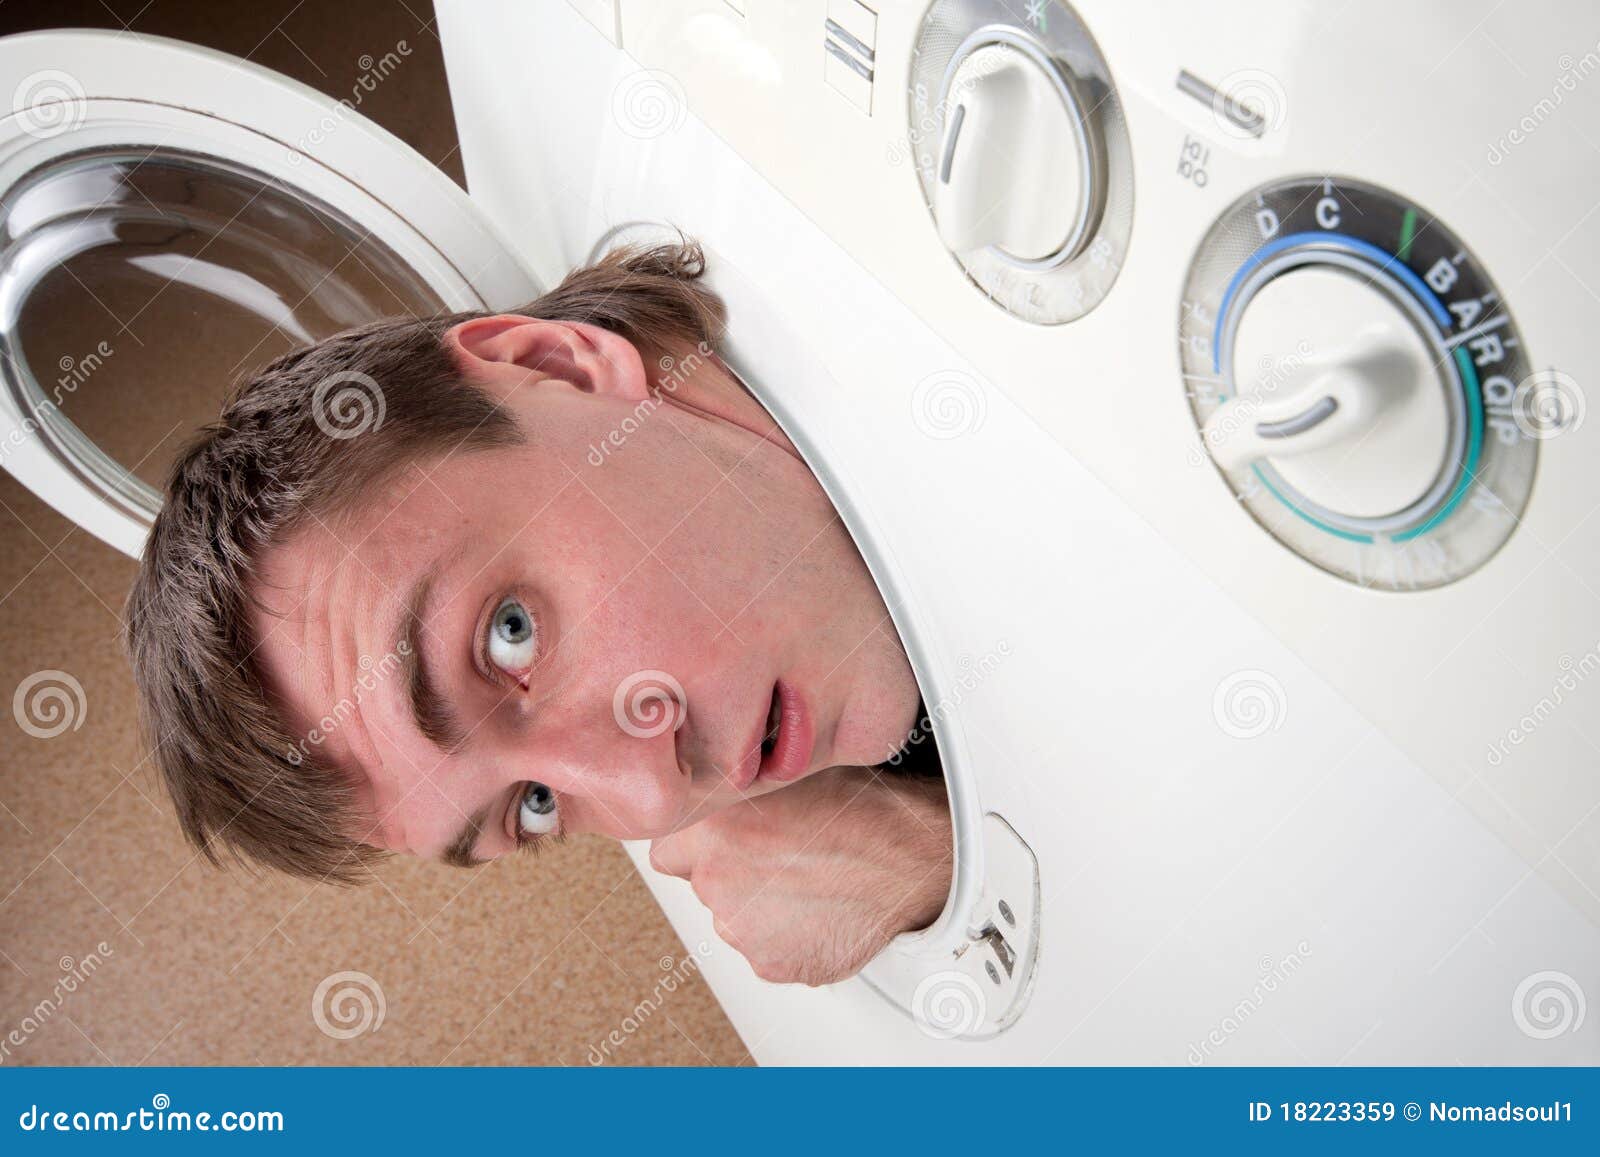 Surprised Man Inside Washing Machine Royalty Free Stock Images Image